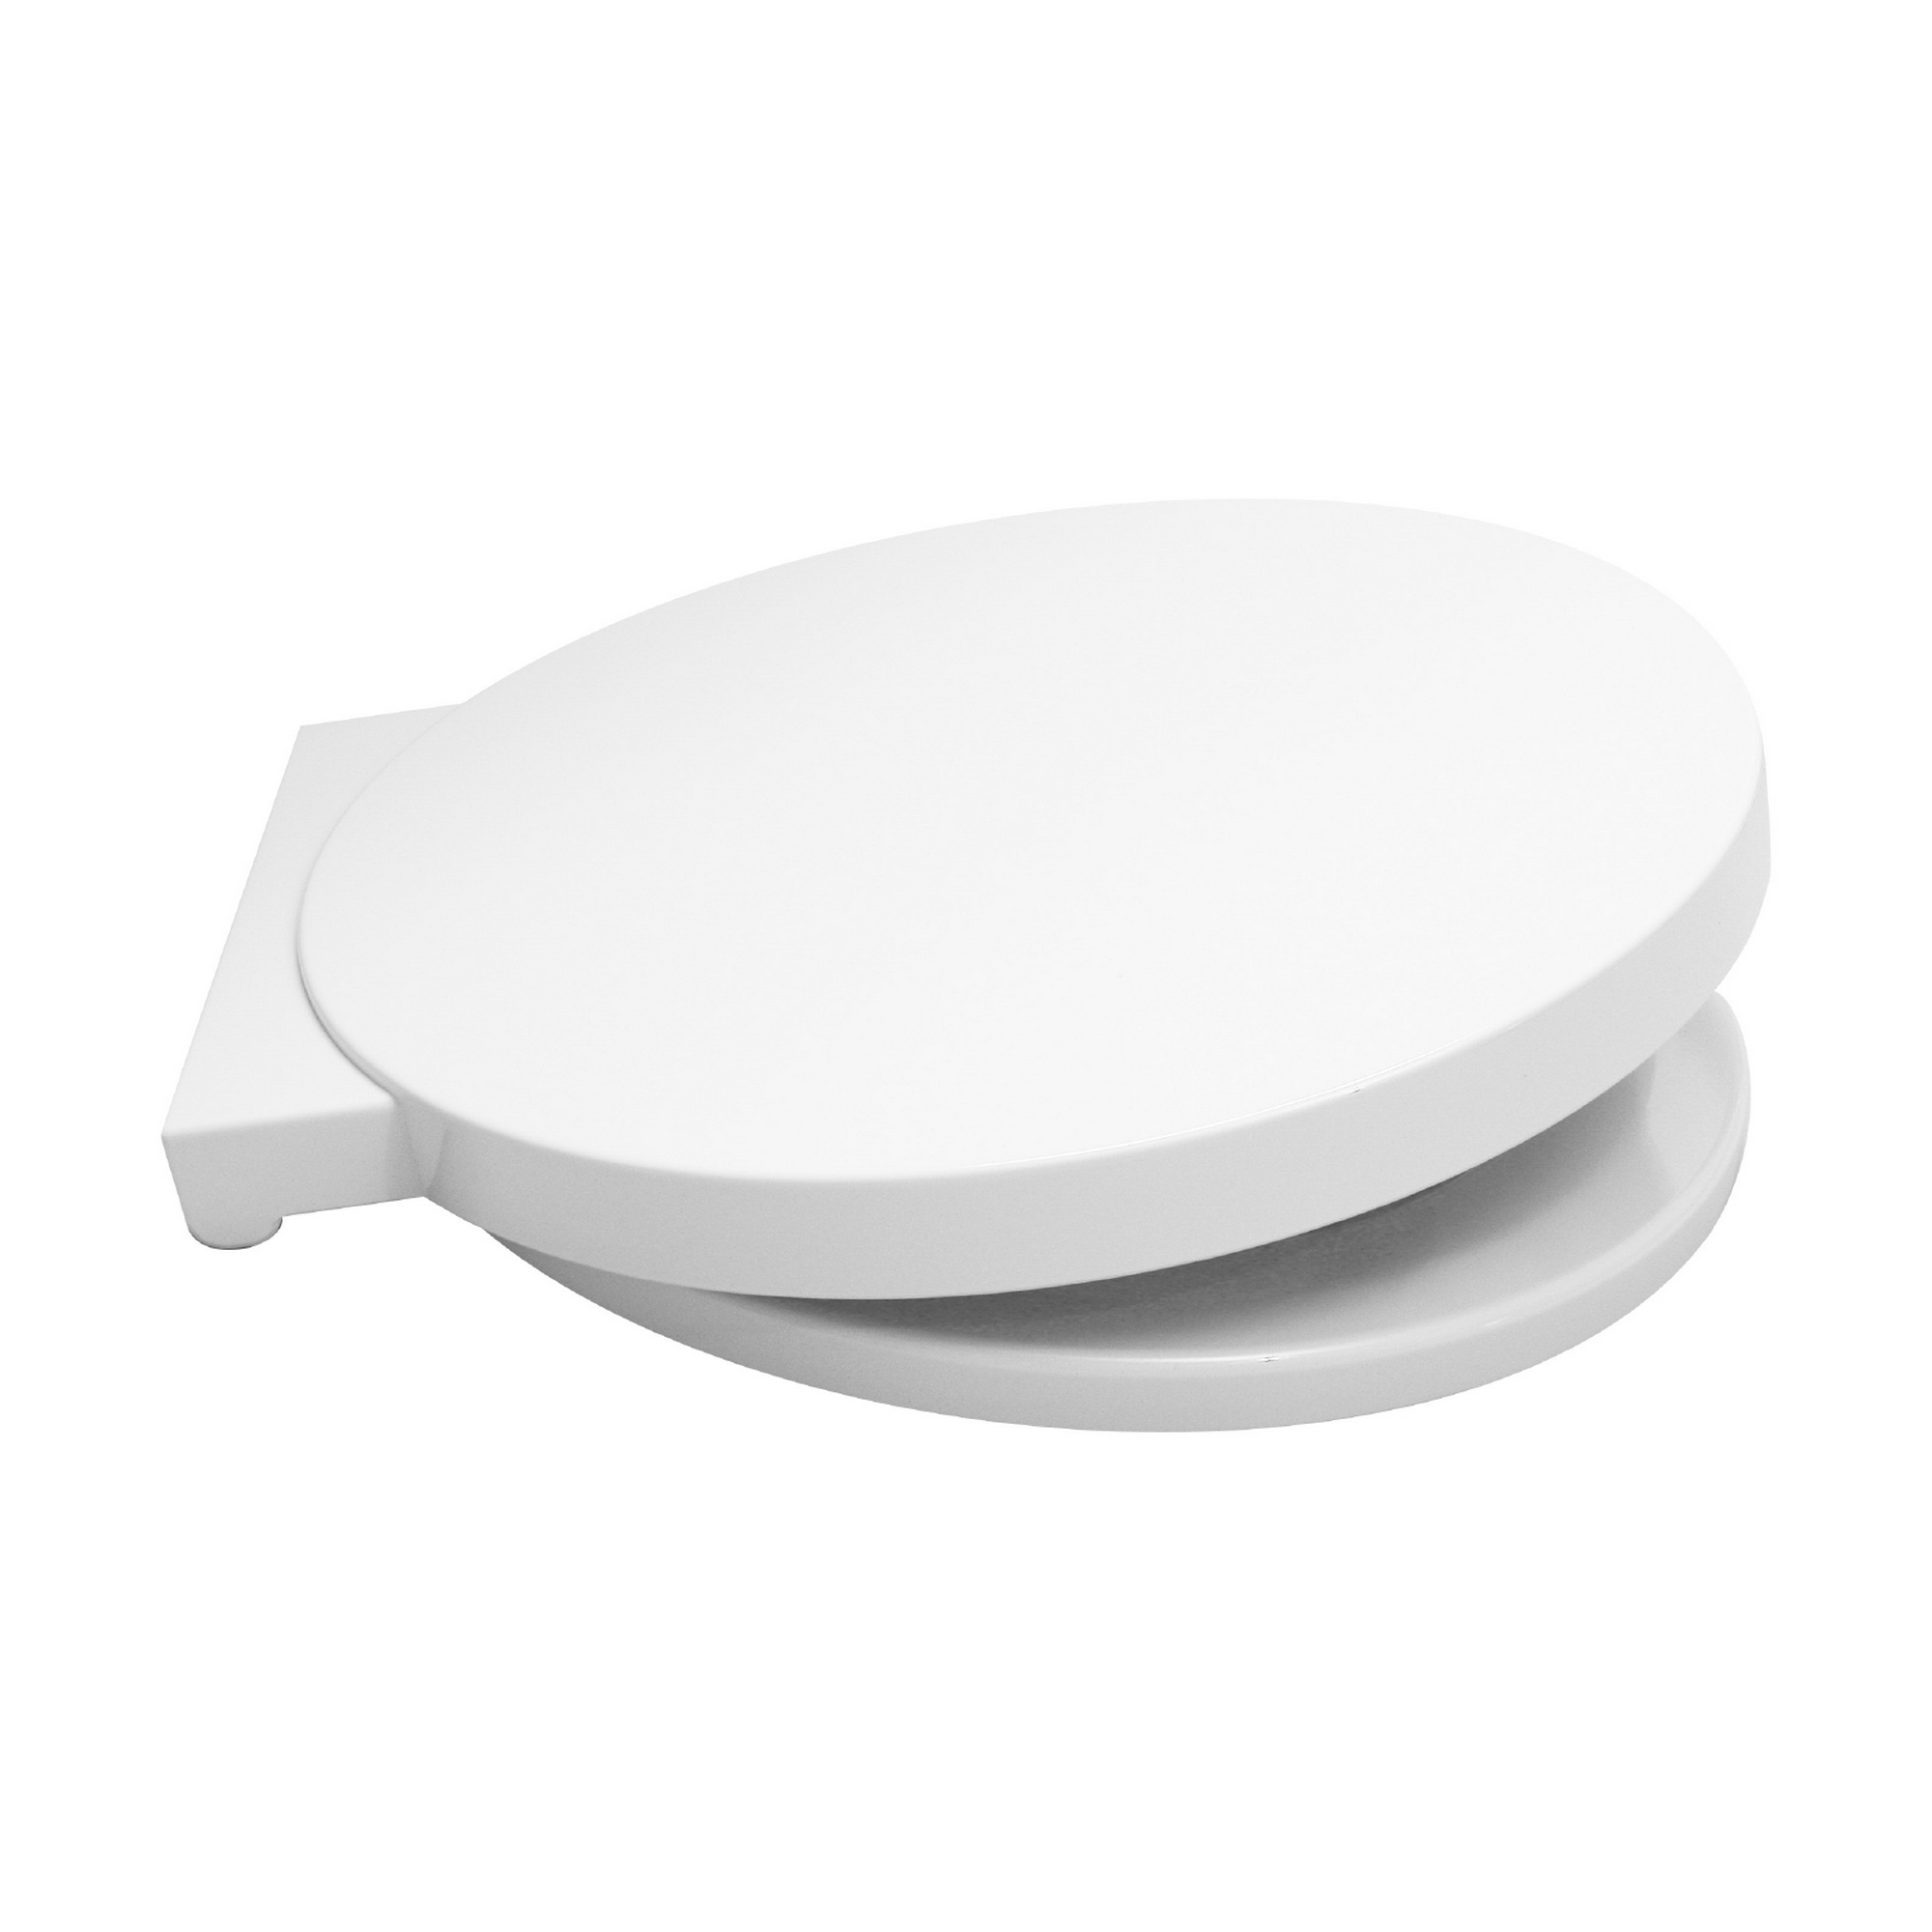 WC-Sitz 'Reflex' weiß Duroplast, mit Absenkautomatik + product picture